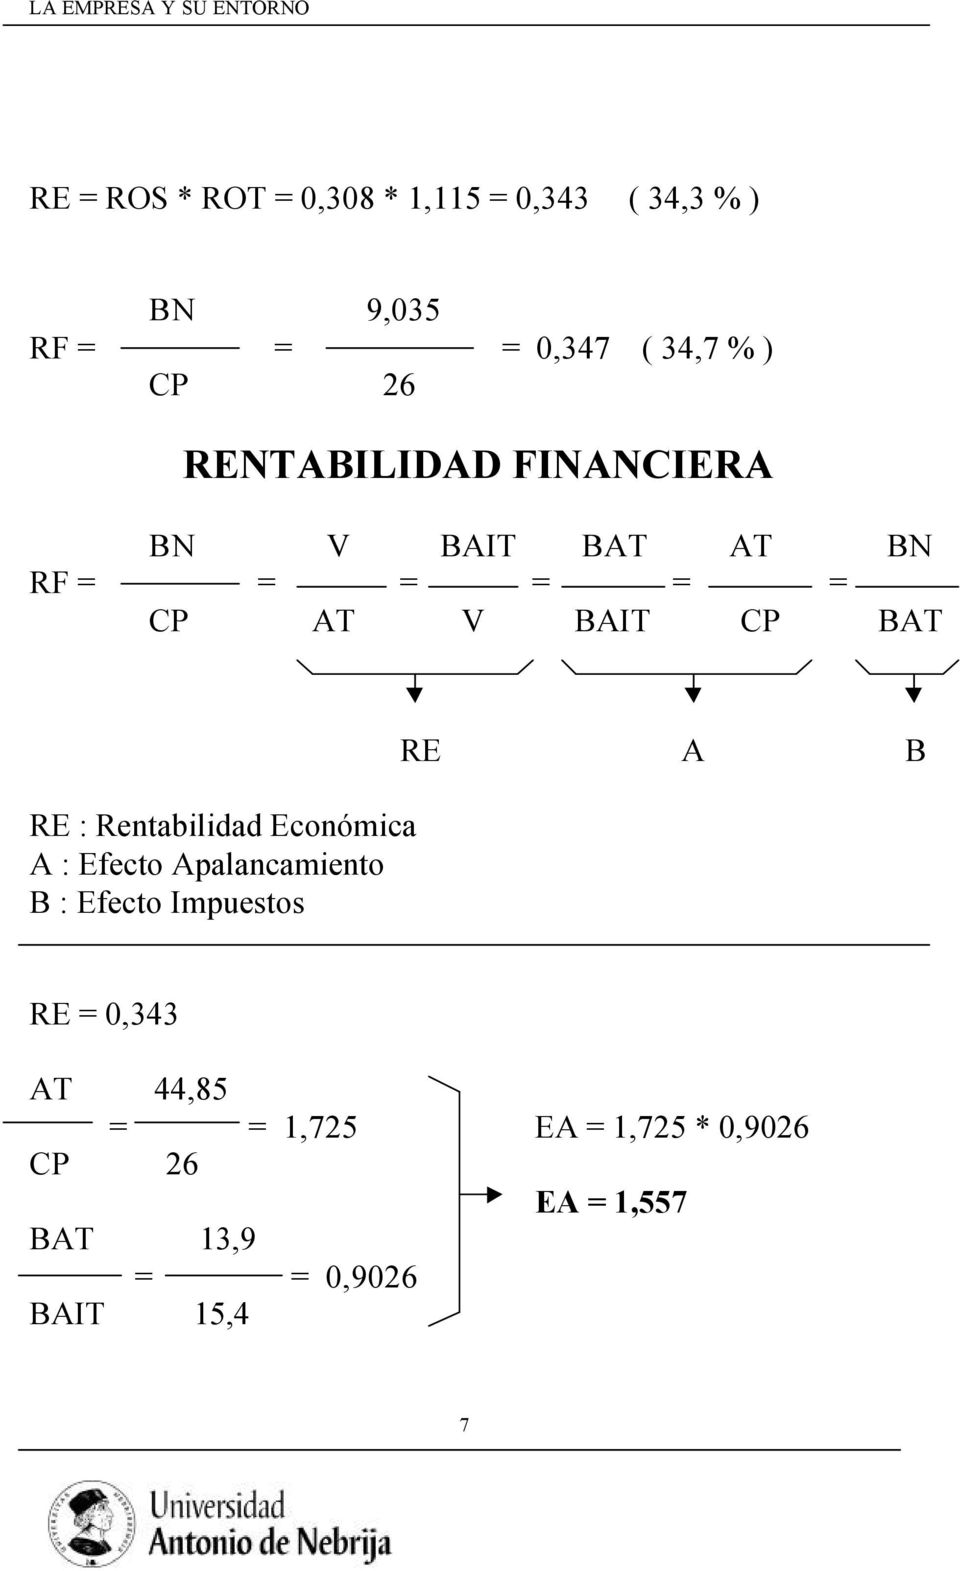 Rentabilidad Económica A : Efecto Apalancamiento B : Efecto Impuestos RE A B RE = 0,343